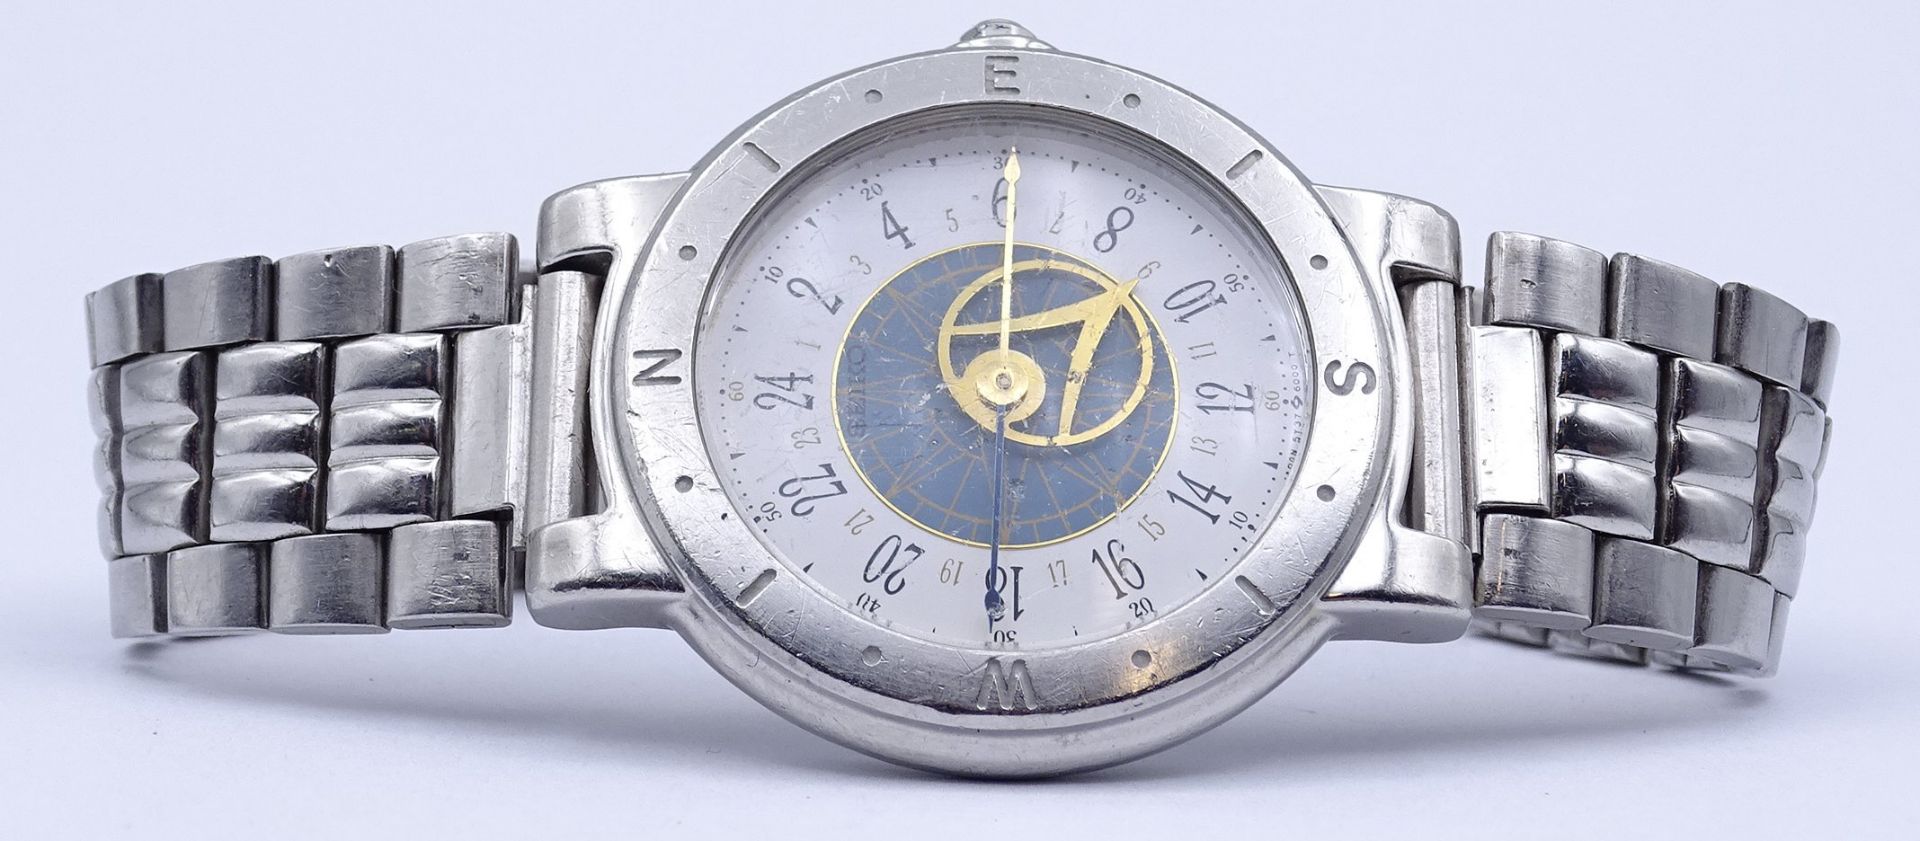 Seiko Levante Herren Armbanduhr, Edelstahl, D. 36mm, Funktion nicht überprüft, Quartzwerk, starke T